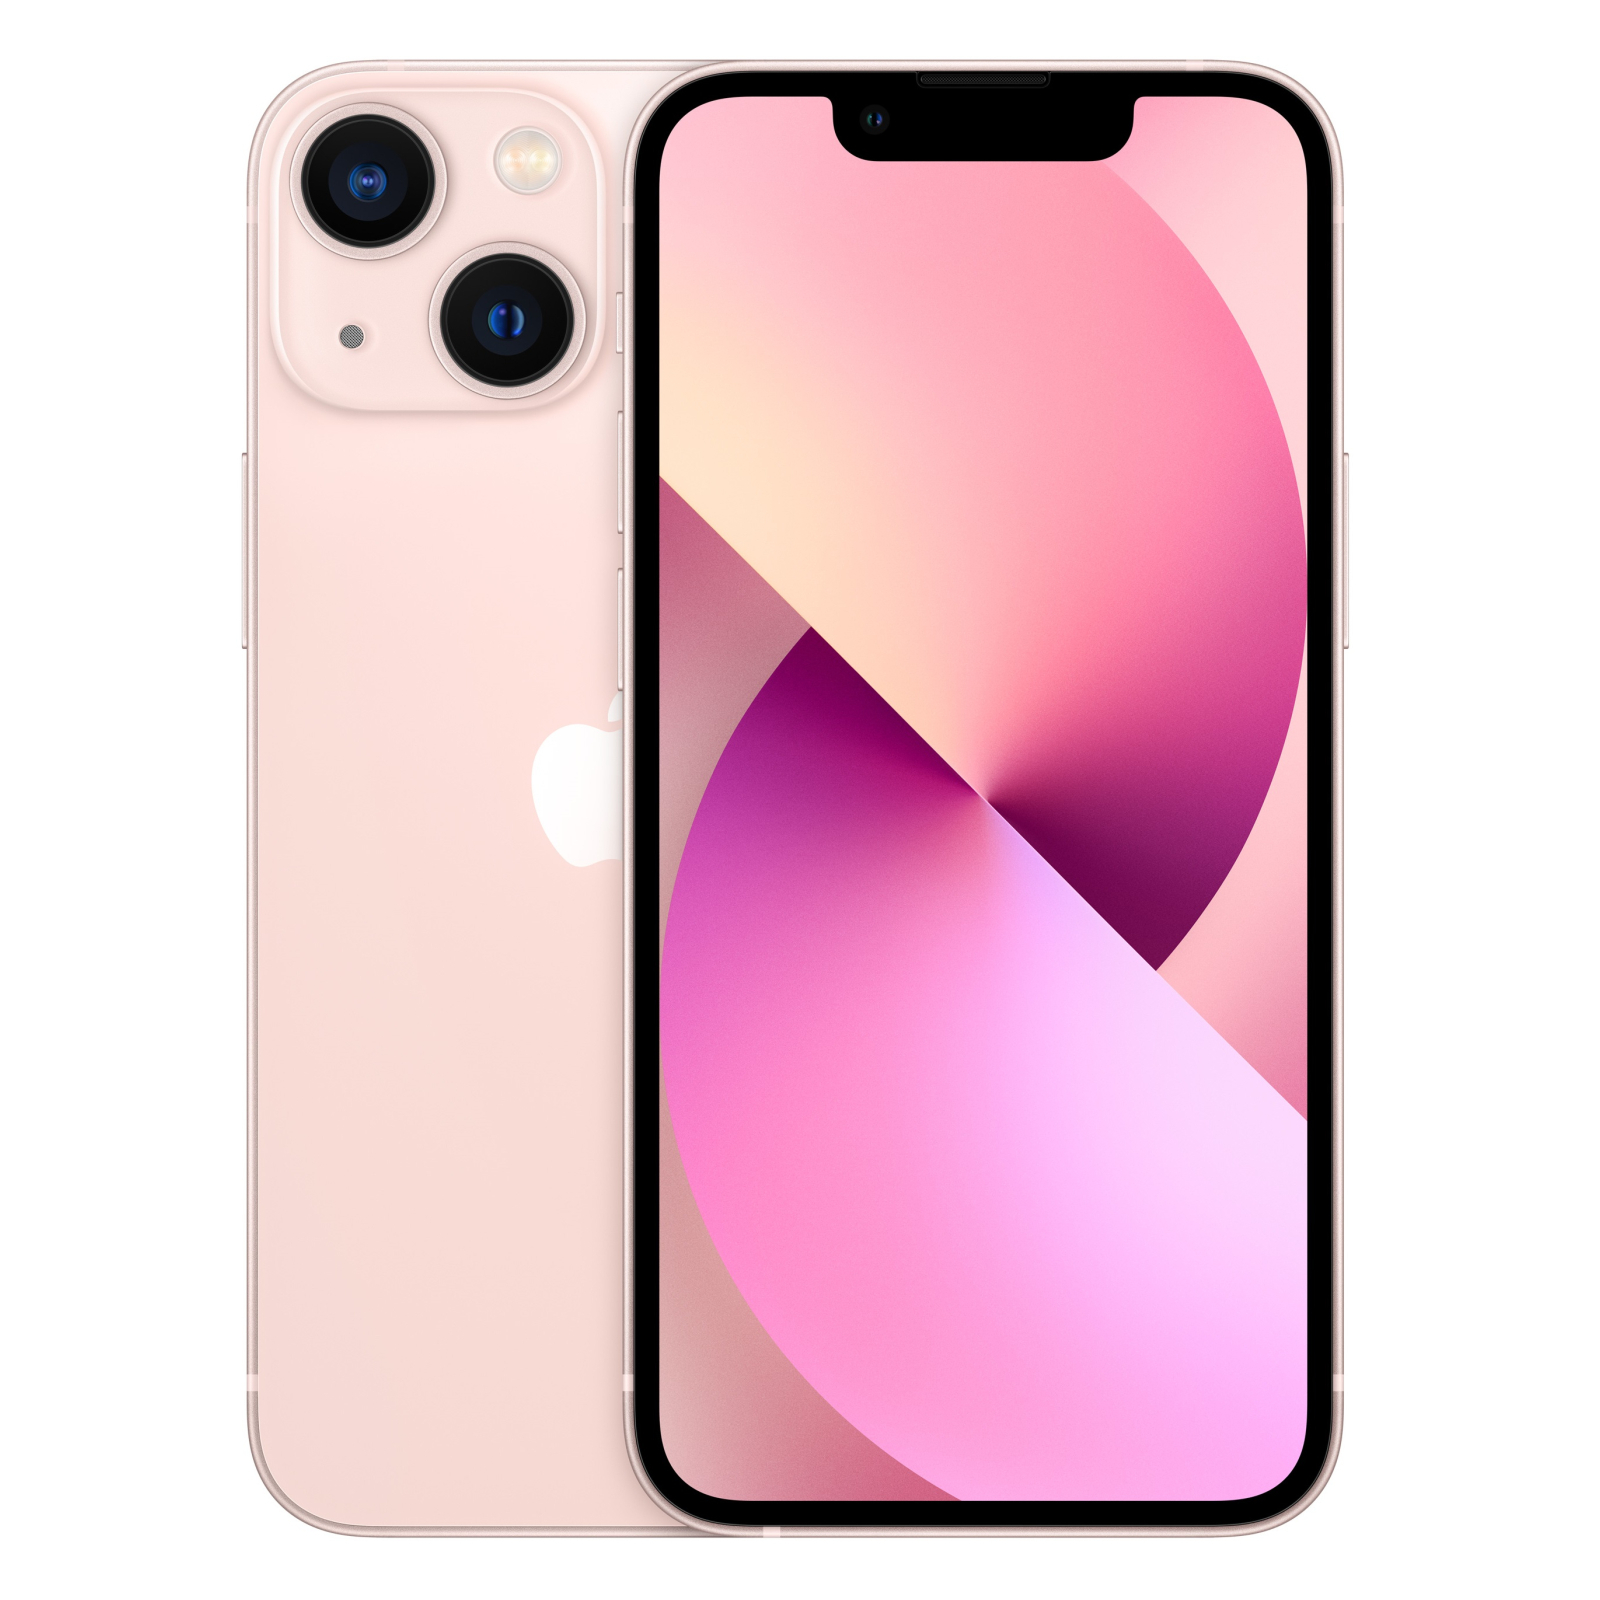 Мобильный телефон Apple iPhone 13 mini 256GB Pink (MLK73)